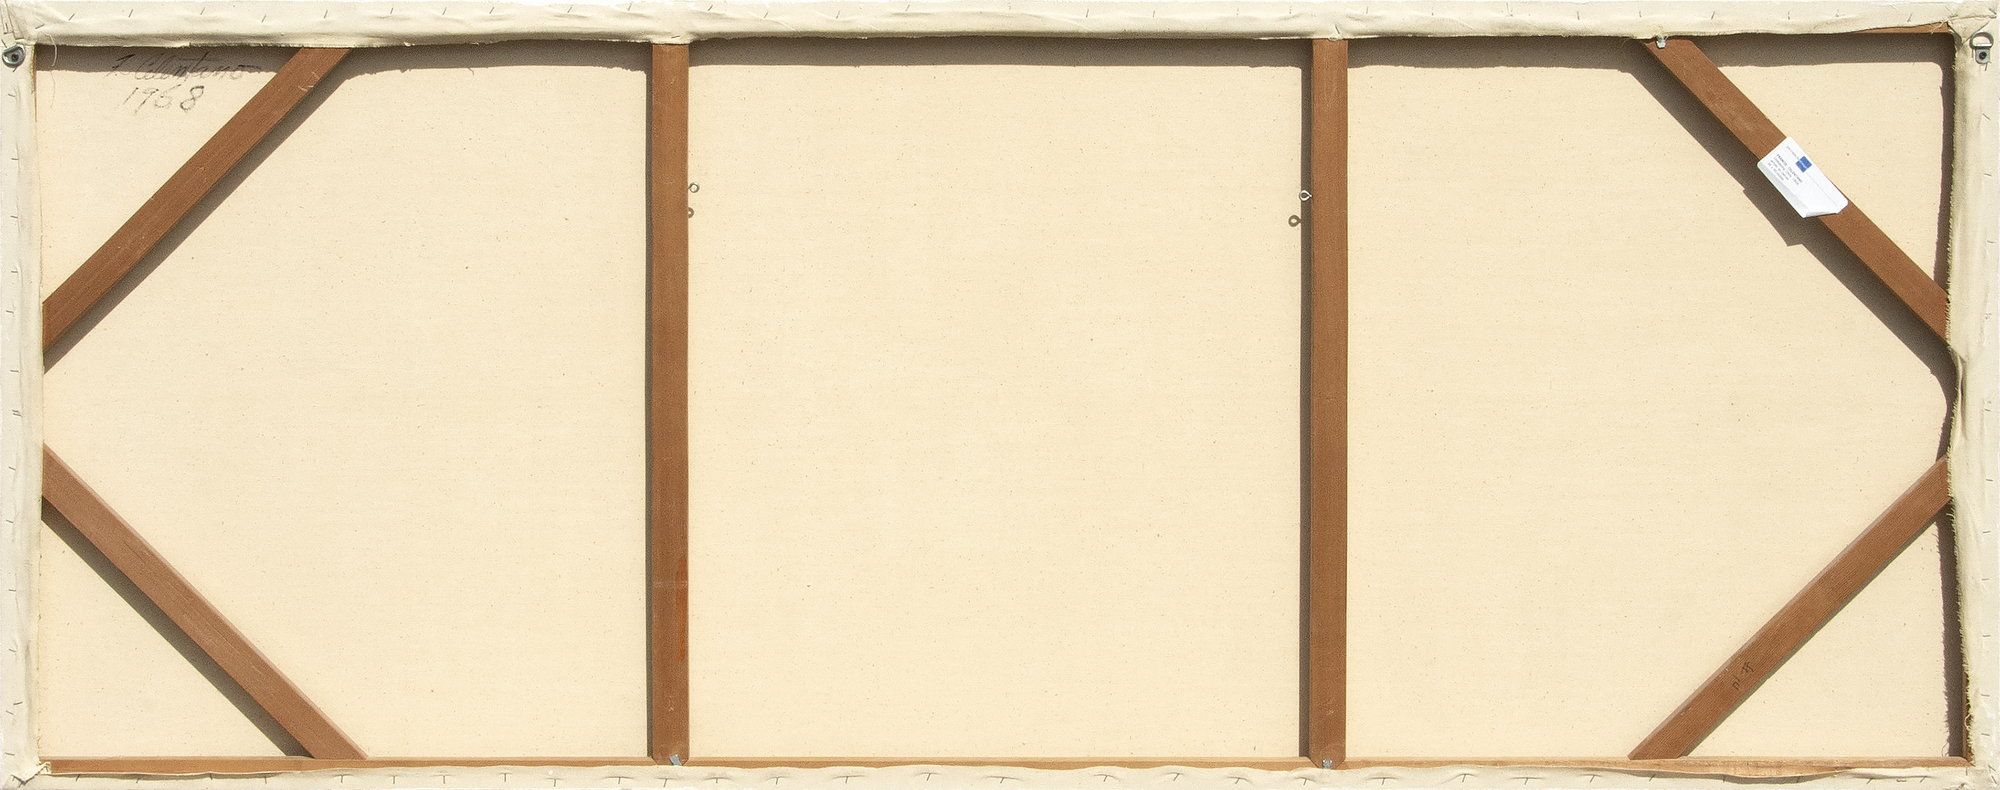 فرانسيس CELENTANO-وحدات متموجة-الأكريليك علي قماش-36 x 90 في.